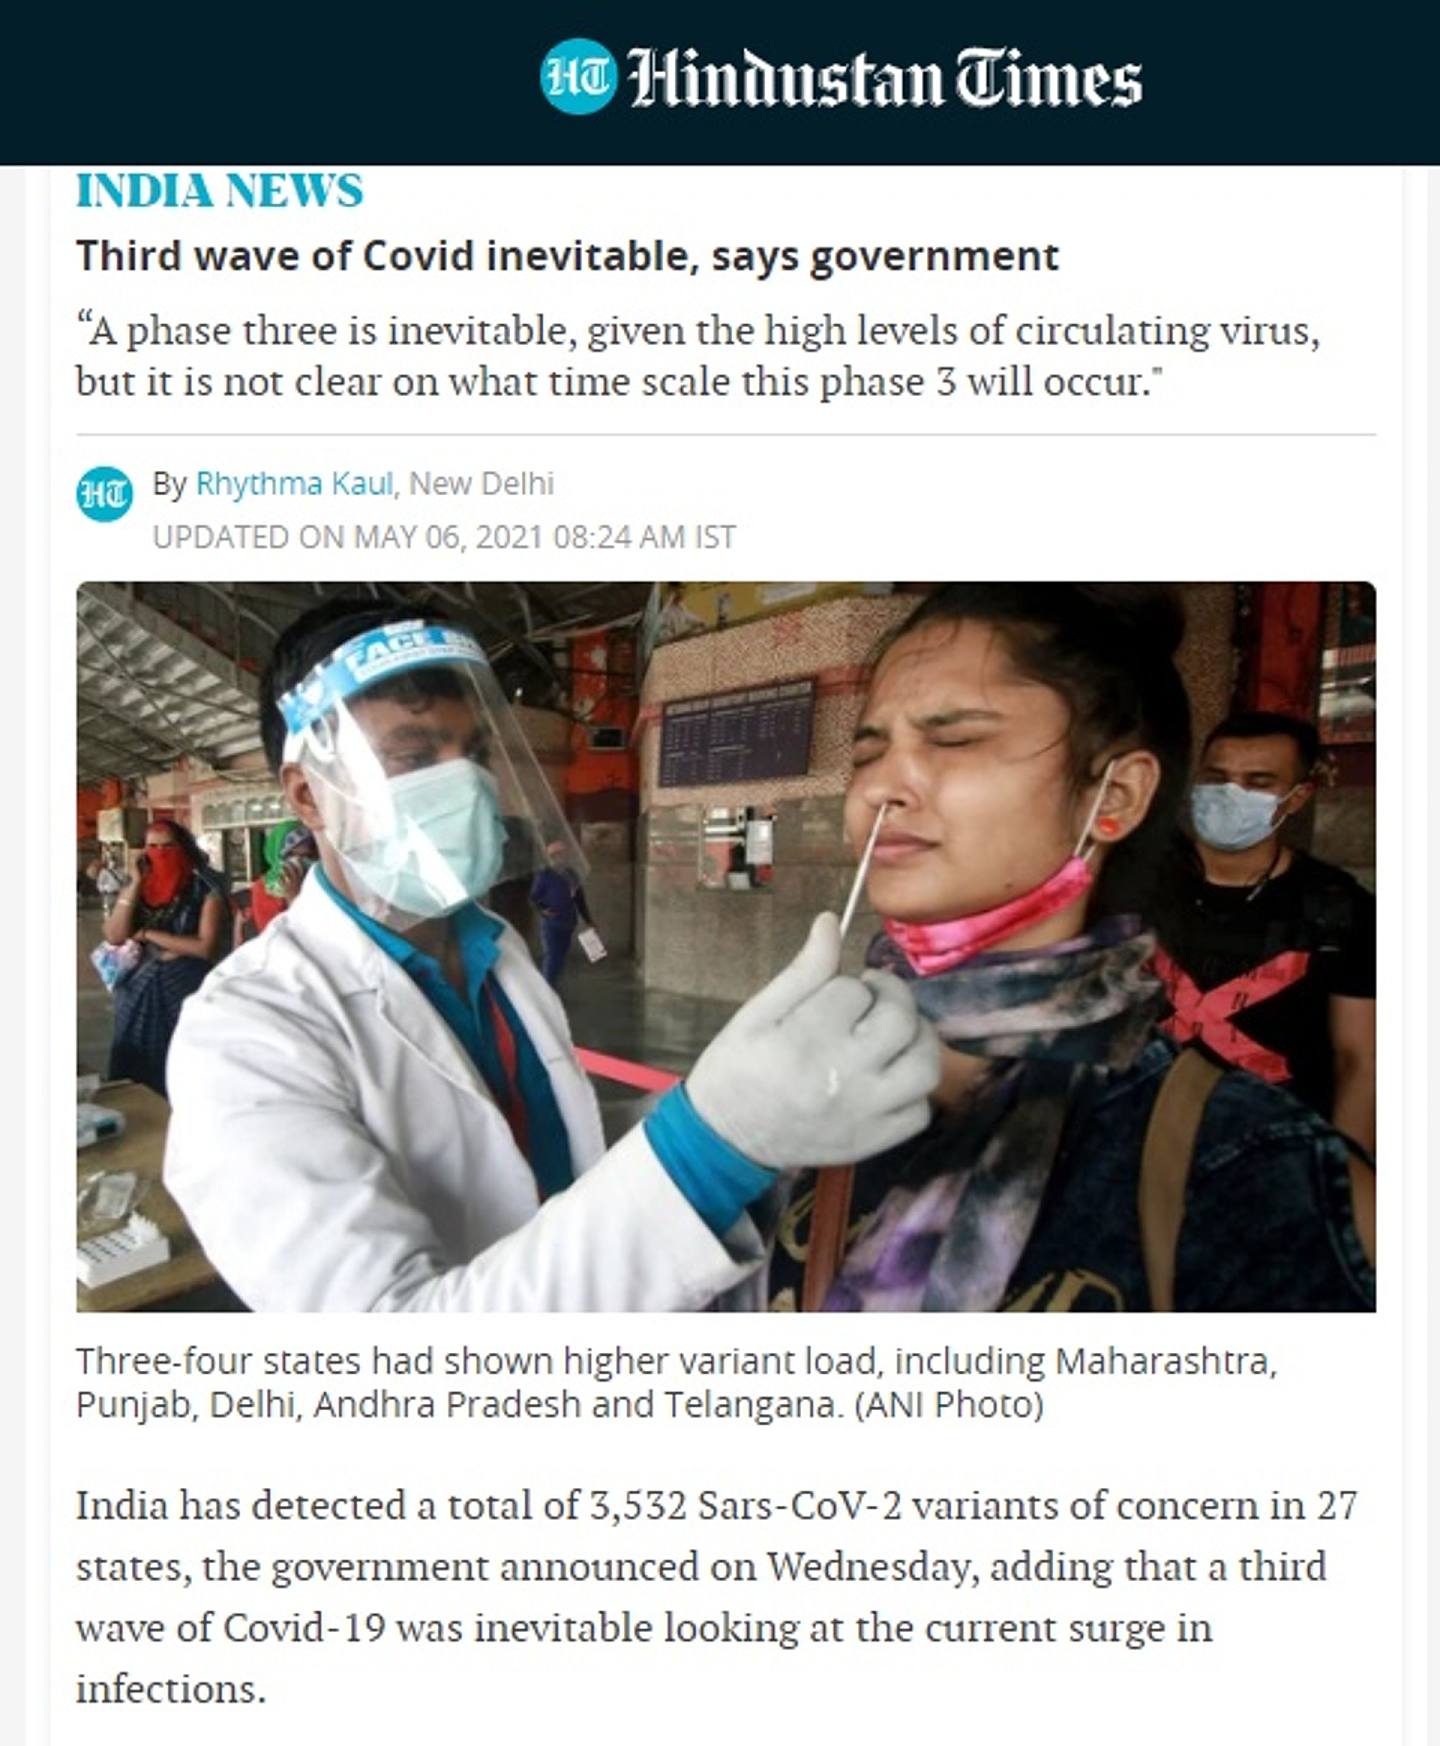 《印度斯坦时报》报道称，印度在27个邦发现3532种变种病毒。 （Hindustan Times）